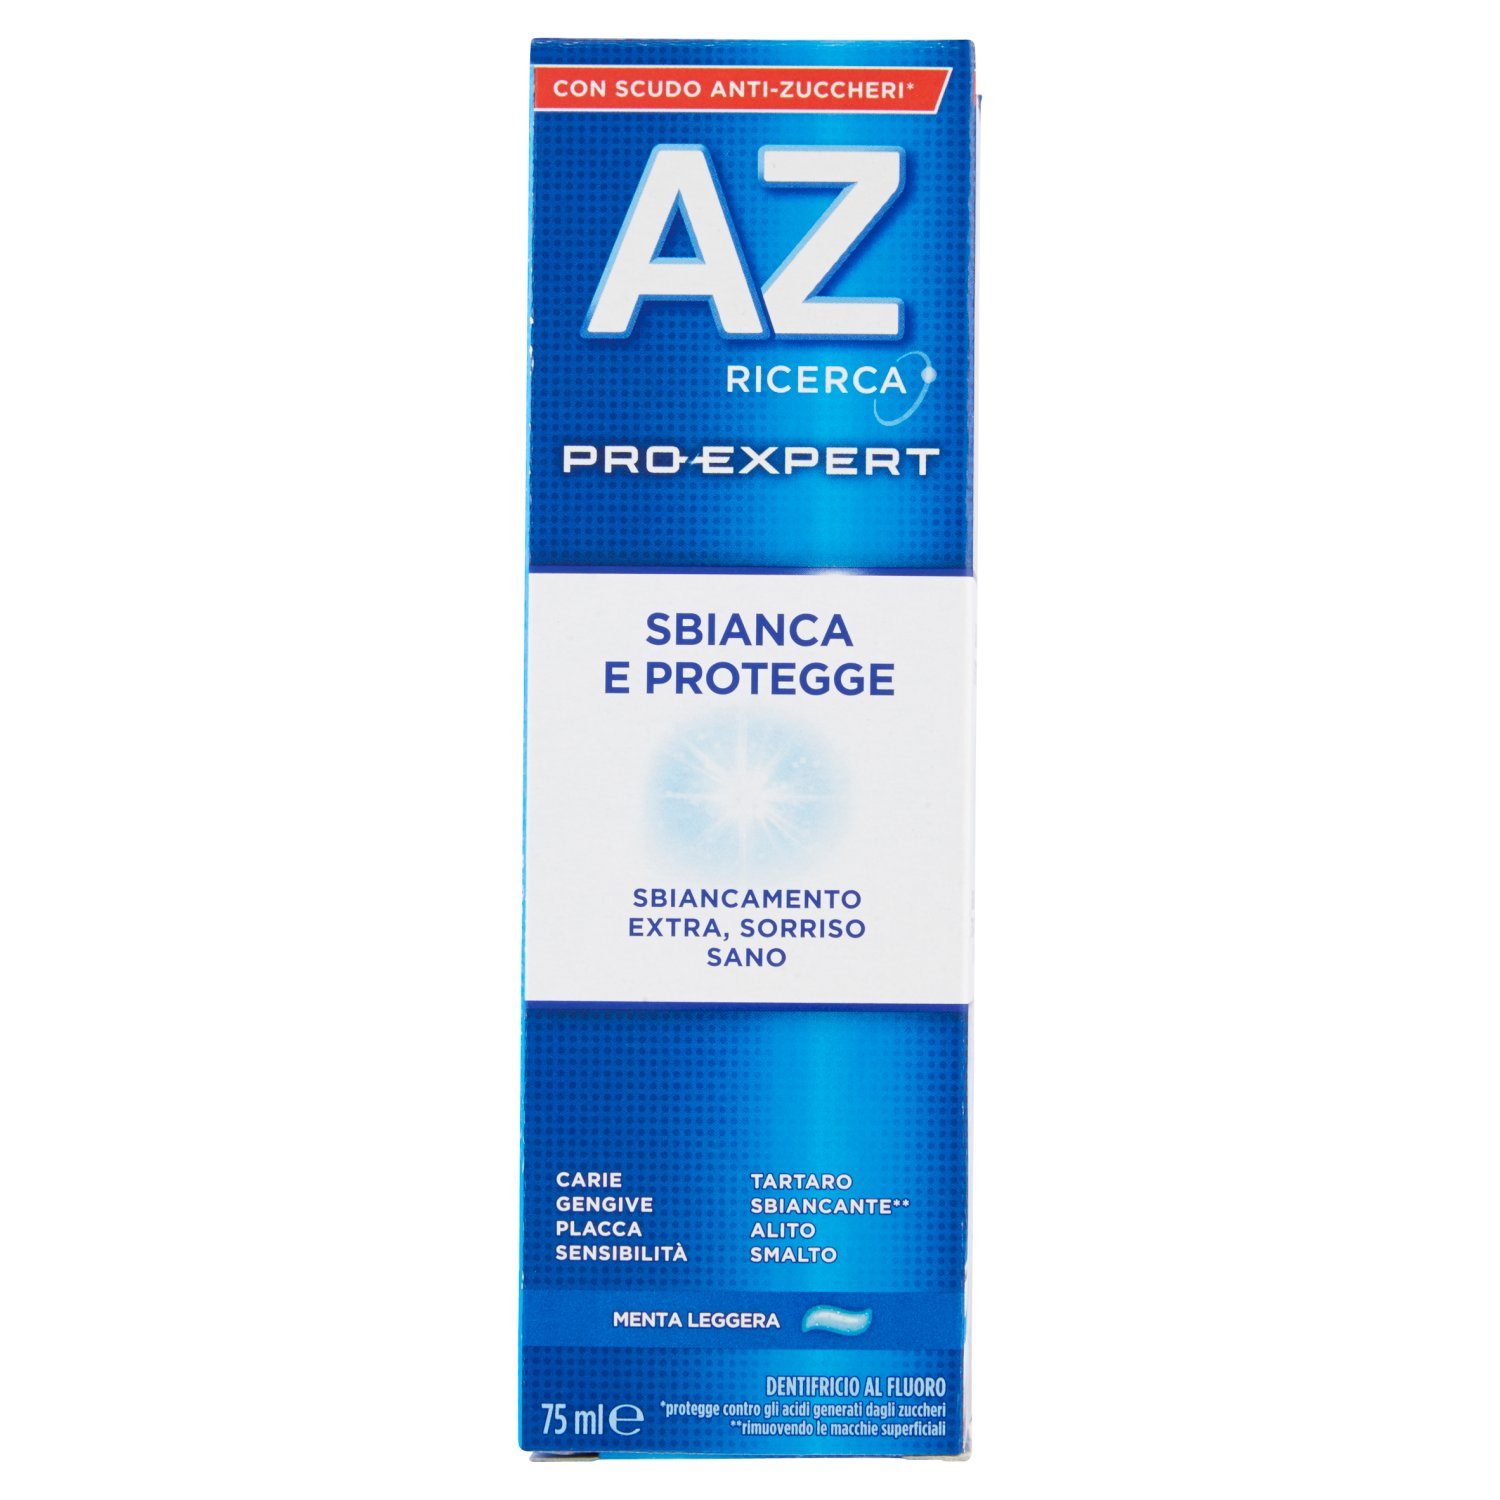 Dentifricio AZ Pro-Expert Sbianca e Protegge 75ml